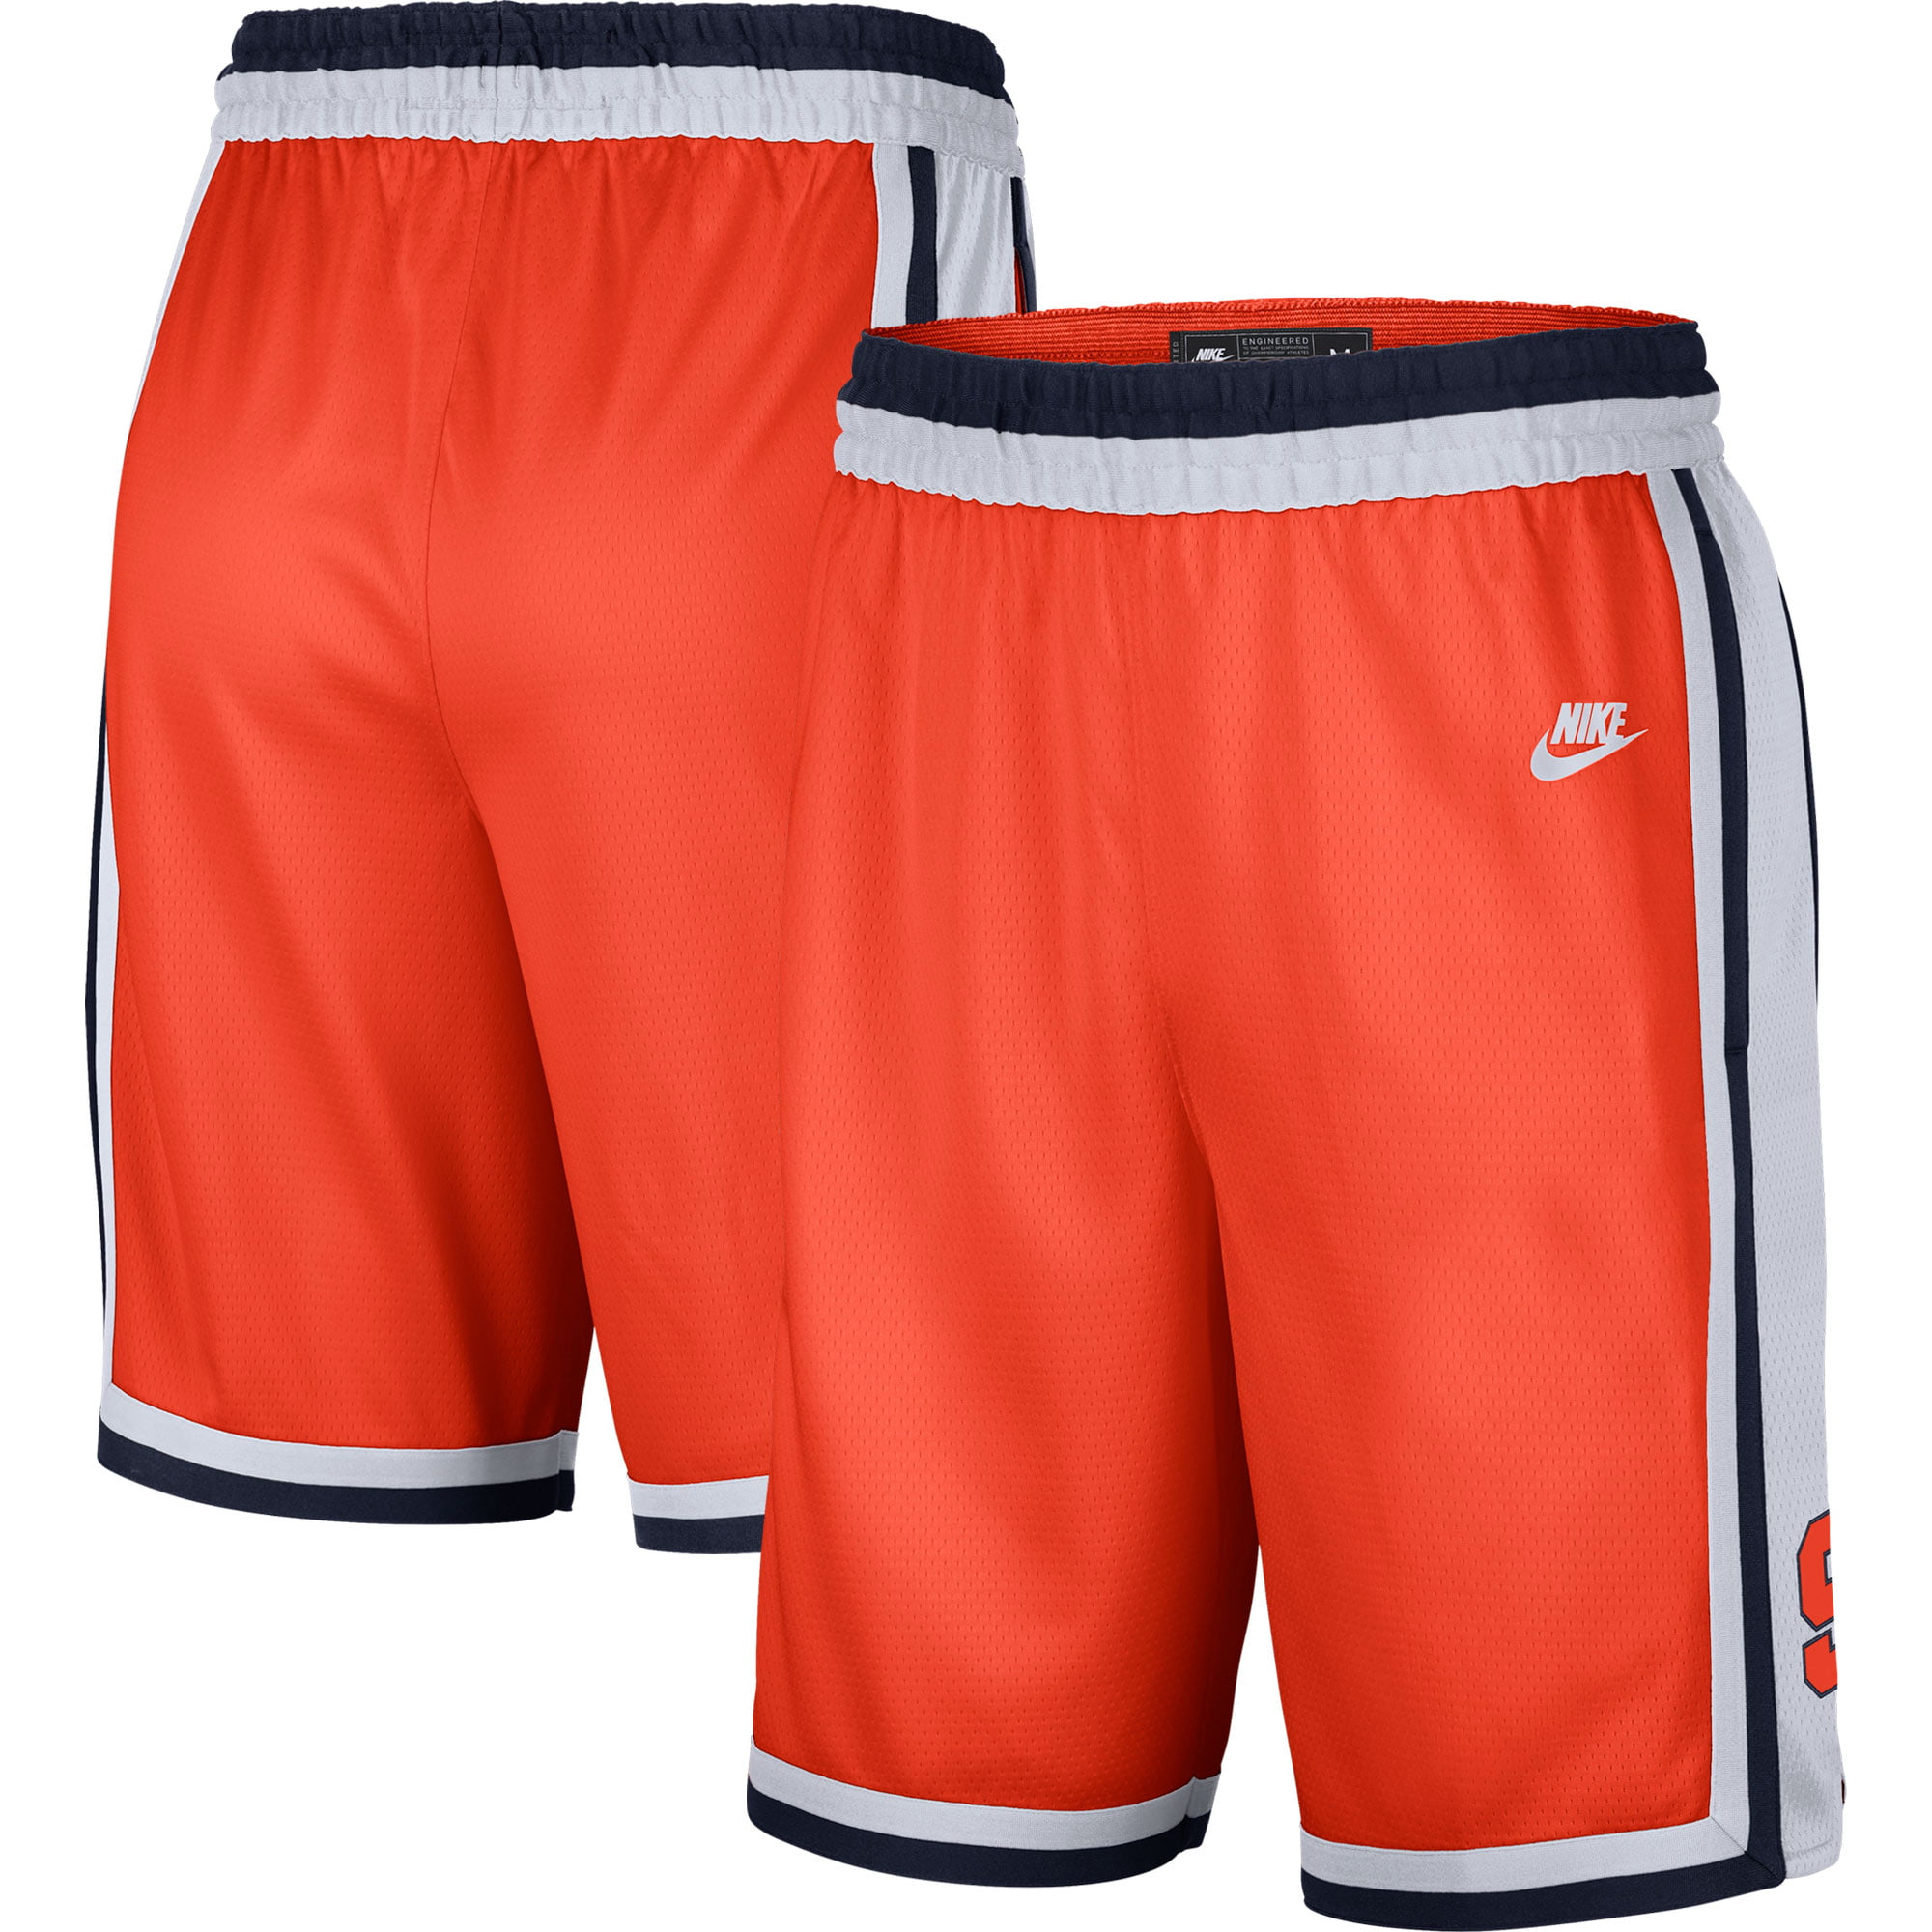 Syracuse Orange Nike Retro Limited 